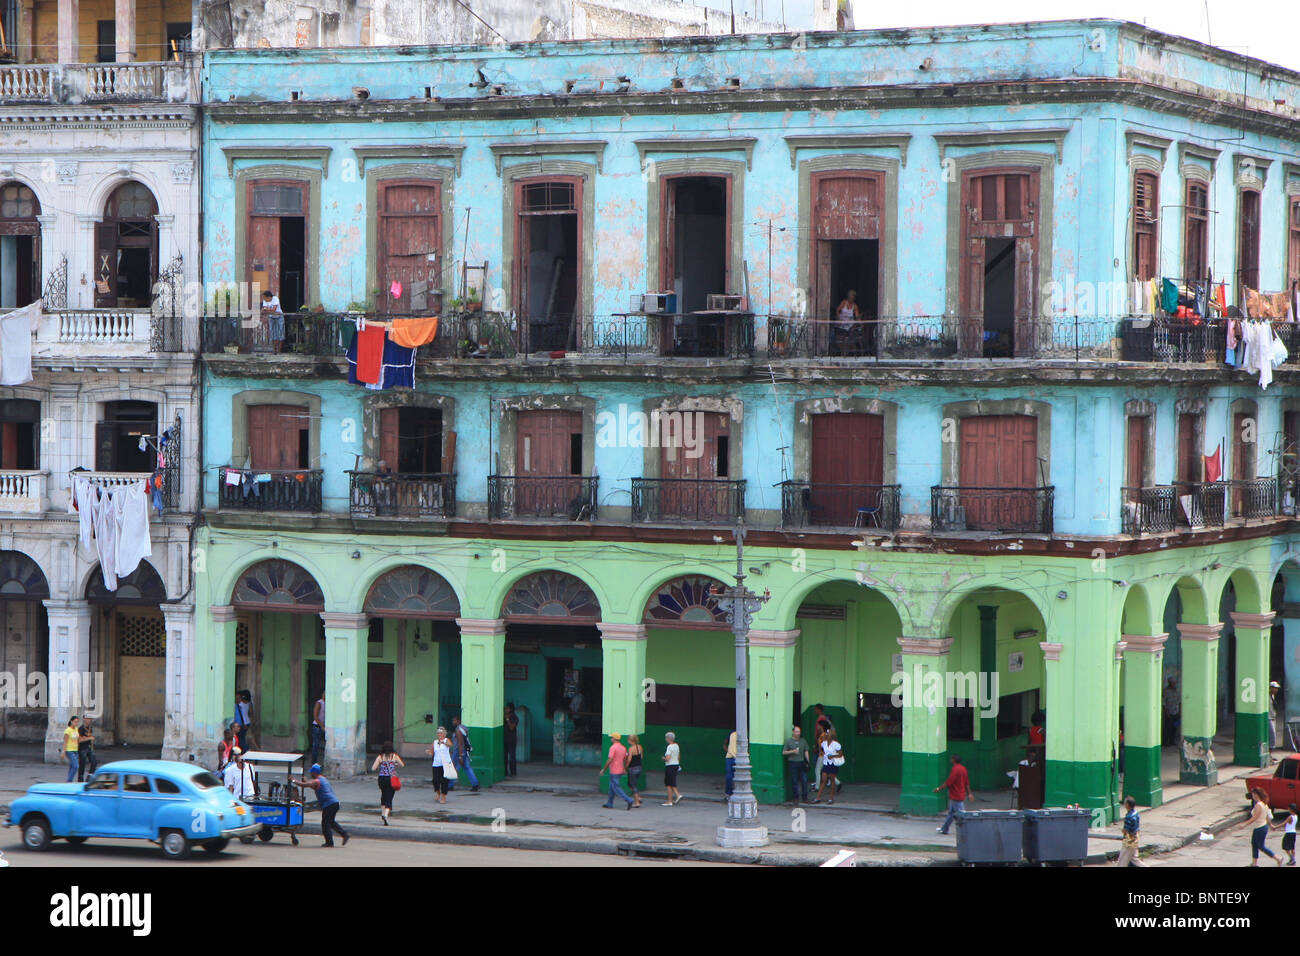 Vieux bâtiment de style colonial, La Havane, Cuba Banque D'Images